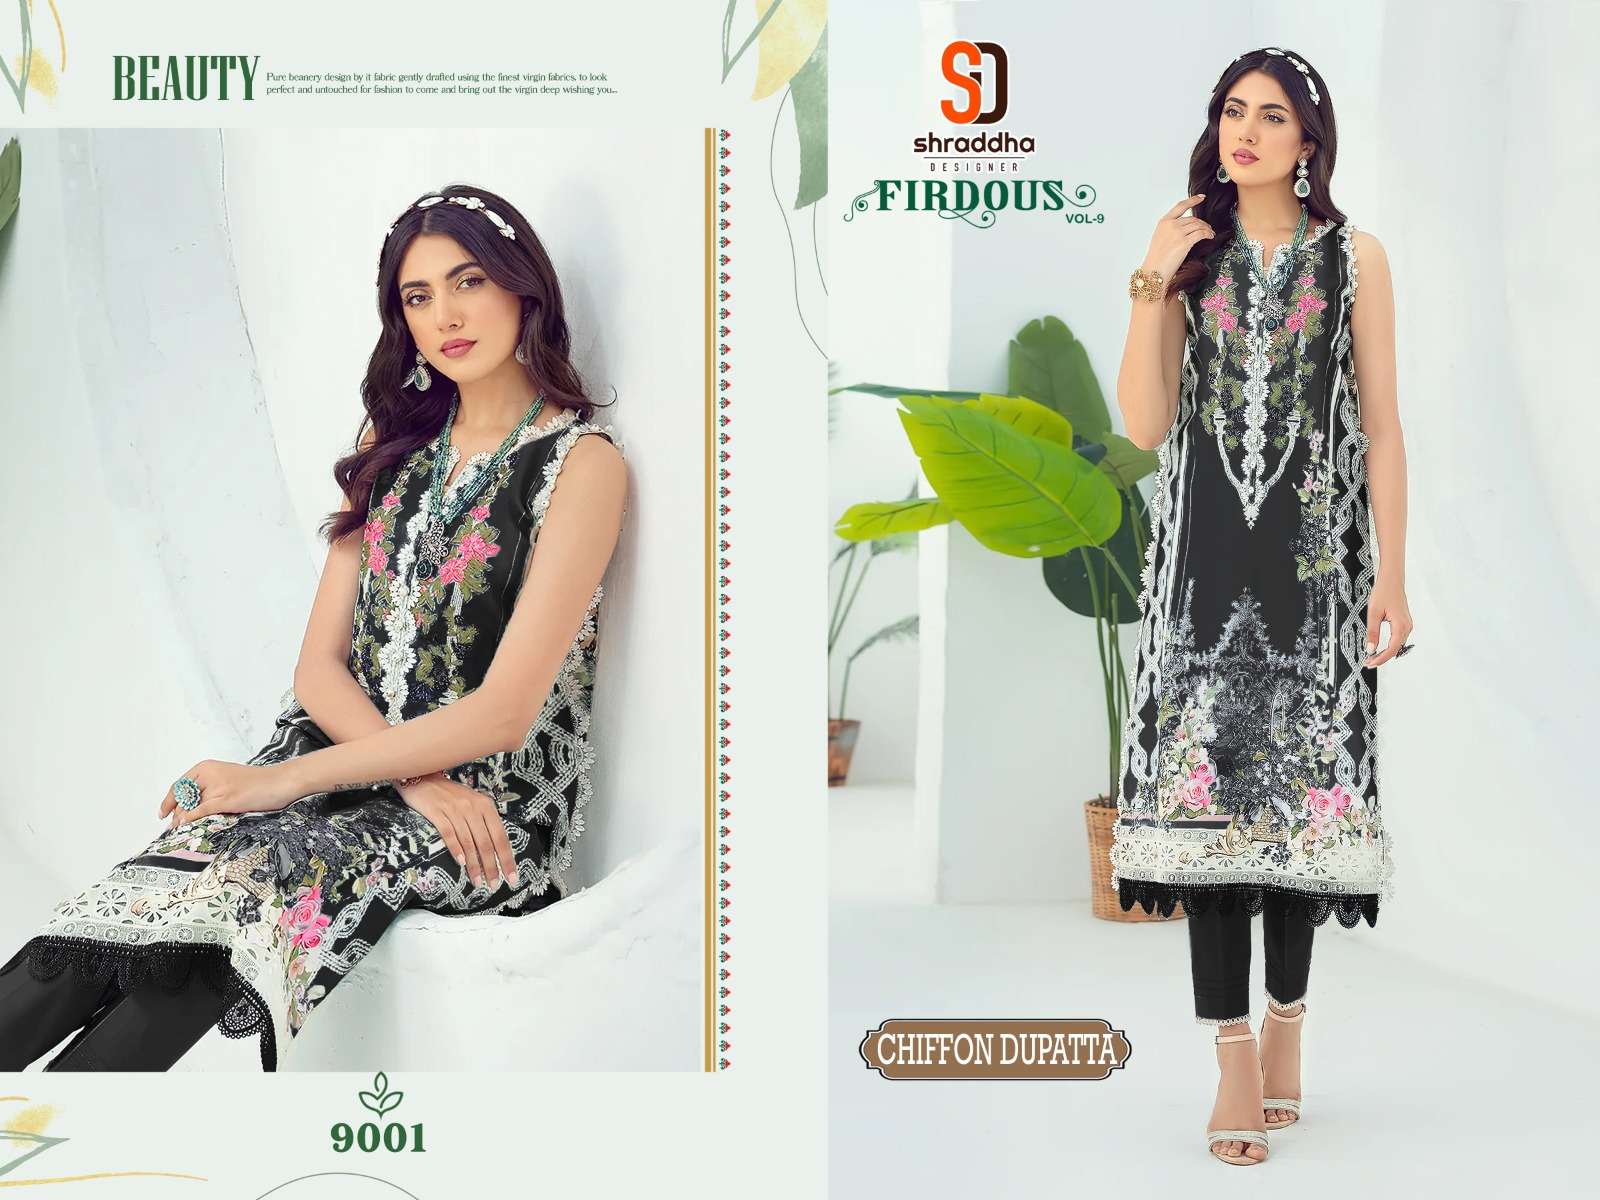 shraddha designer firdous vol-9 special colour edition lawn cotton designer pakistani salwar suits surat 